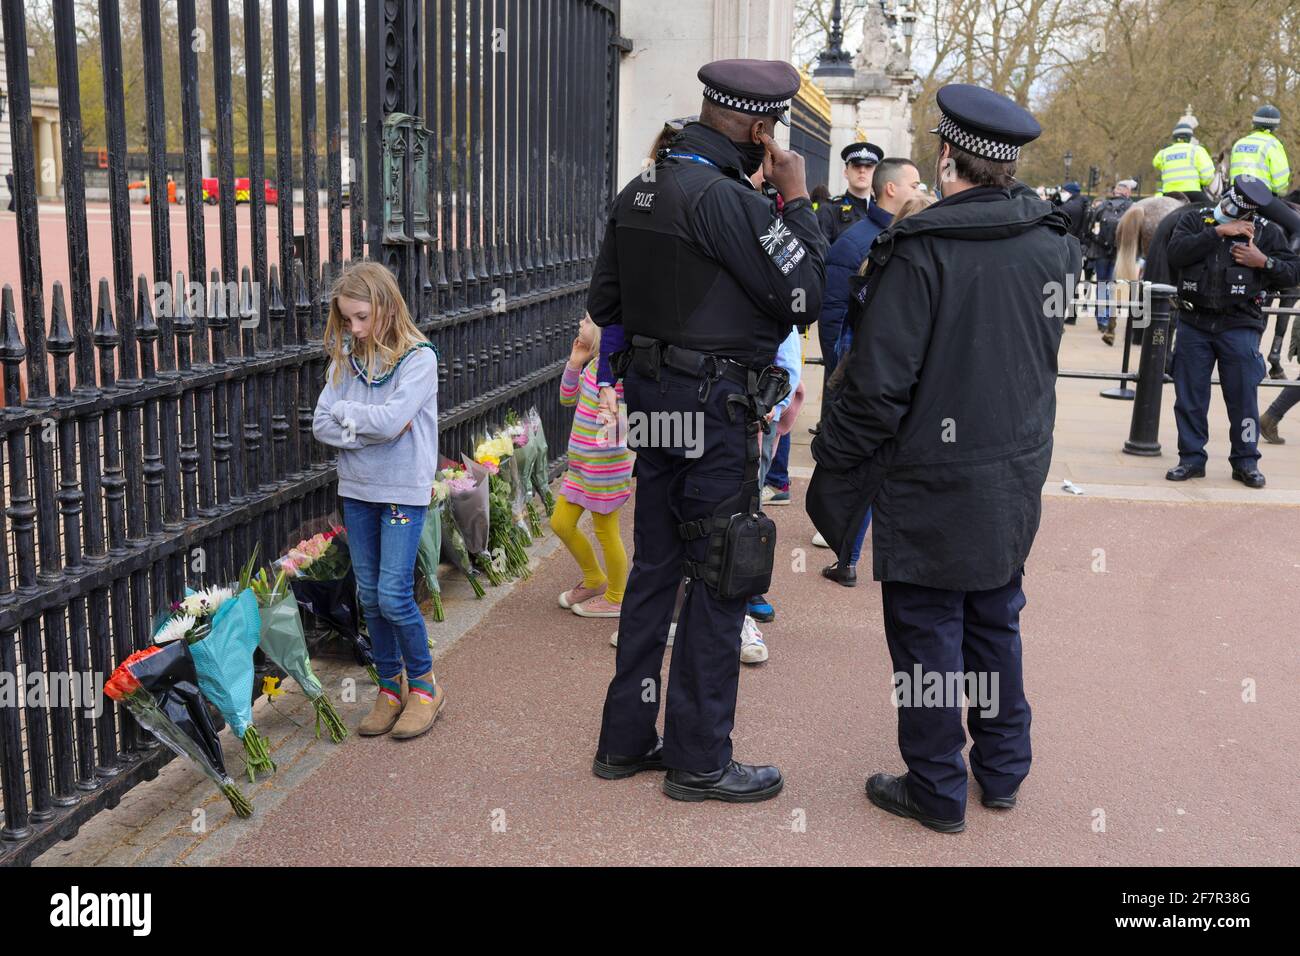 FOTO DER DATEI: London, Großbritannien. April 2021. Menschen legen Blumen vor die Tore des Buckingham Palace, um des britischen Prinzen Philip zu gedenken, in London, Großbritannien, 9. April 2021. Der britische Prinz Philip, der Ehemann von Königin Elizabeth II., ist im Alter von 99 Jahren gestorben, teilte Buckingham Palace am Freitag mit. Quelle: Tim Ireland/Xinhua/Alamy Live News Stockfoto